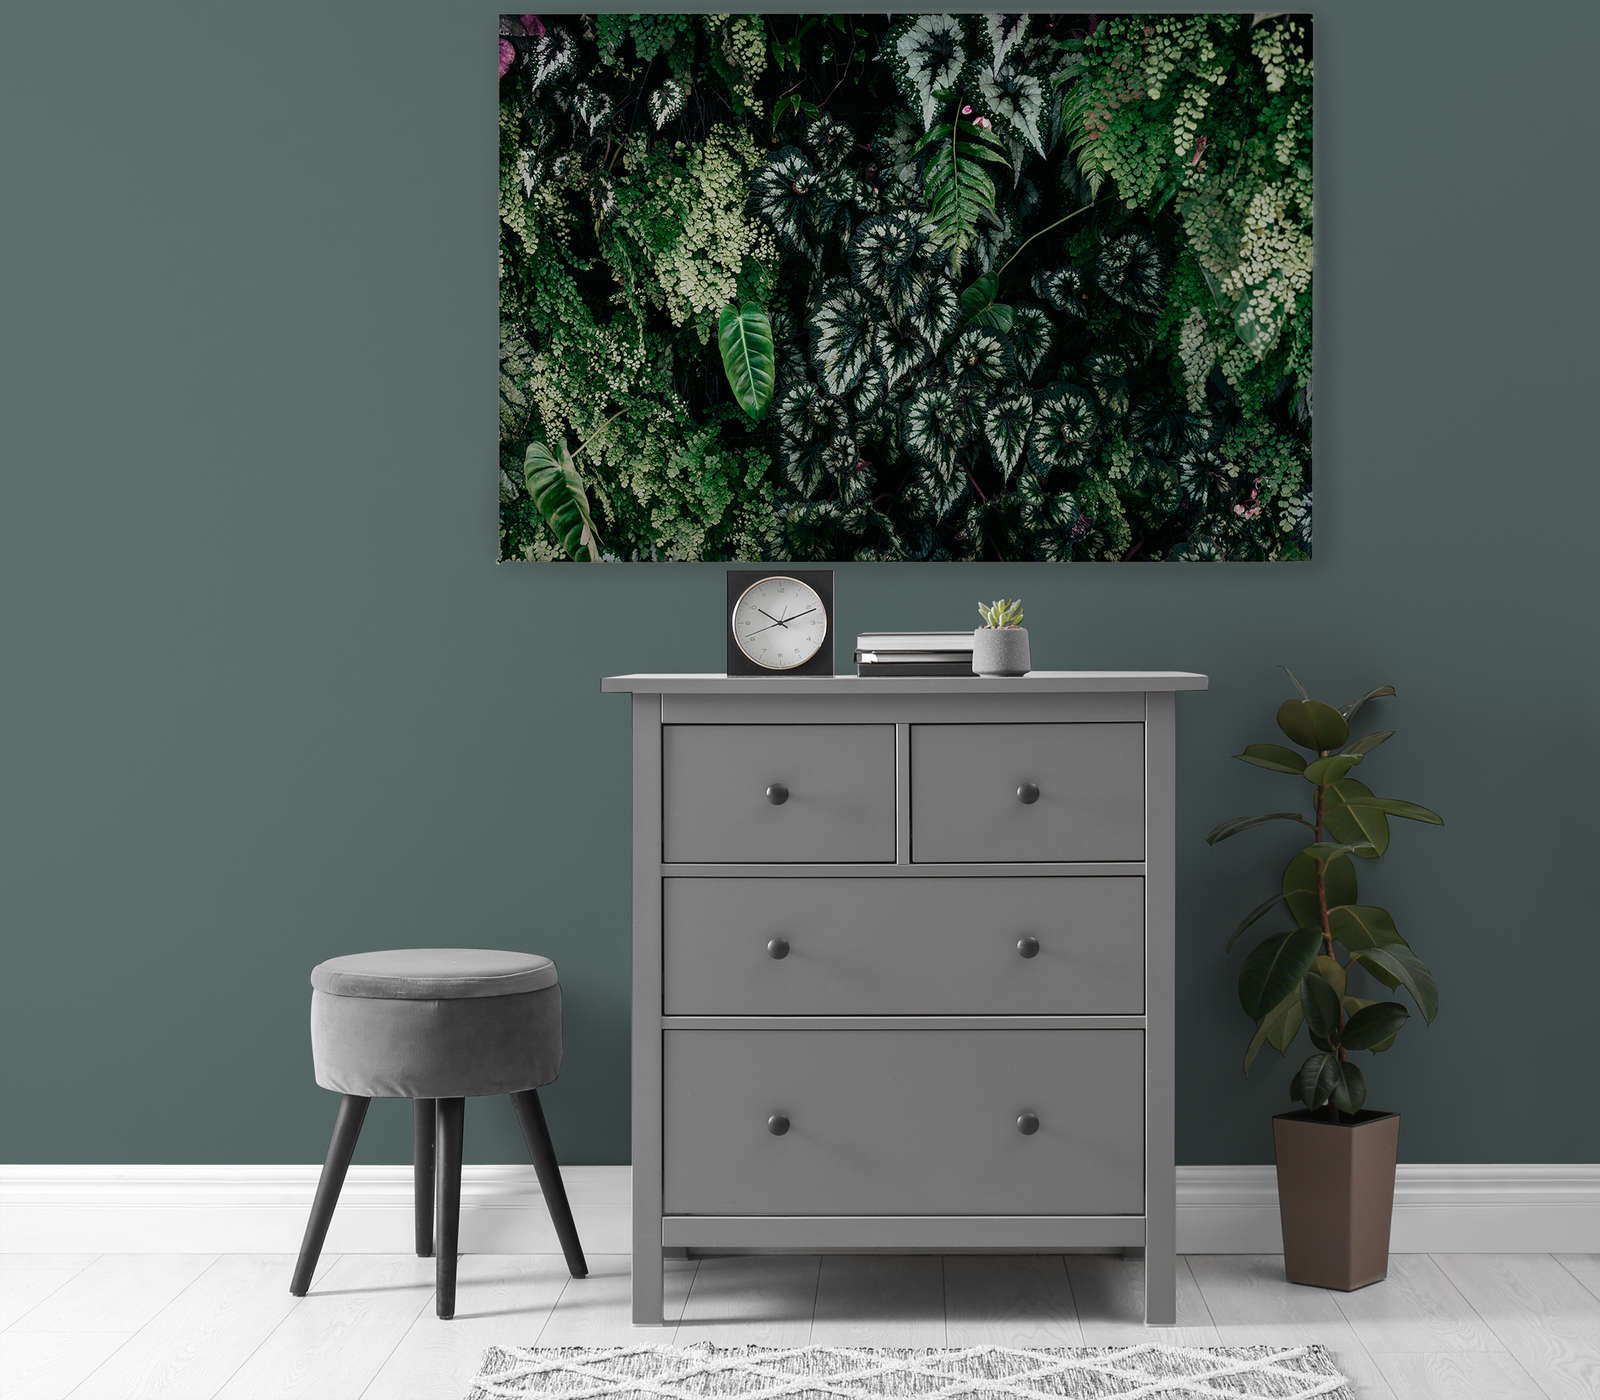             Deep Green 2 - Tableau toile Fourrés de feuilles, fougères & plantes suspendues - 1,20 m x 0,80 m
        